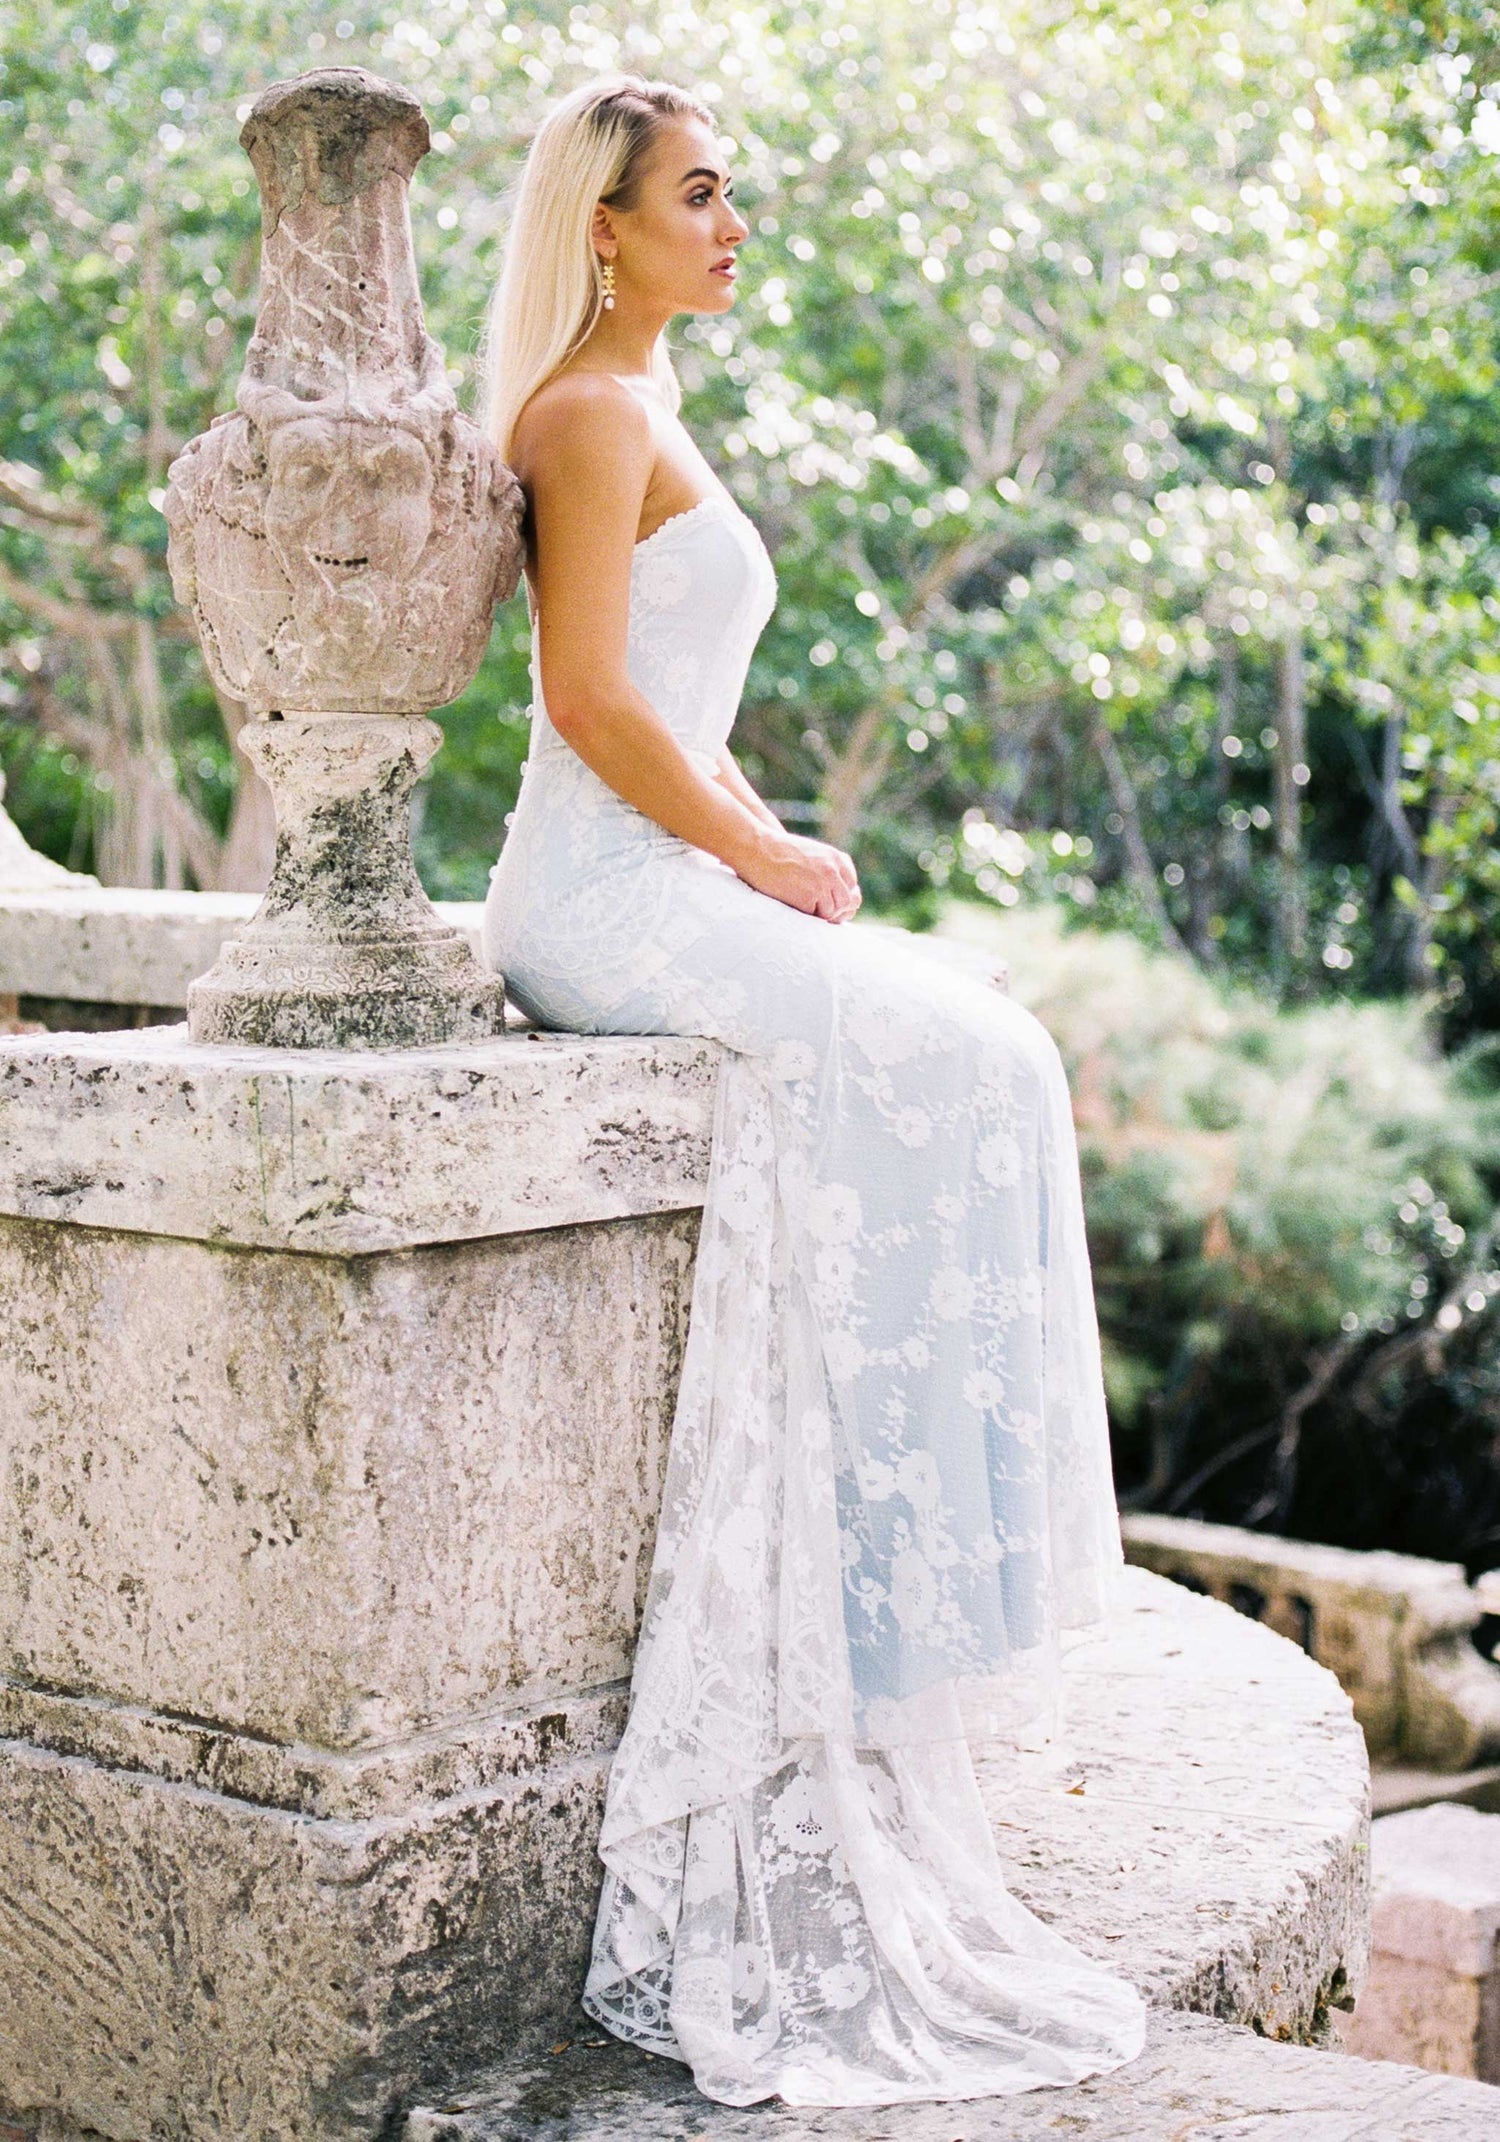 Eloise Blue Silk Wedding Dress  Strapless Sweetheart Wedding Dress